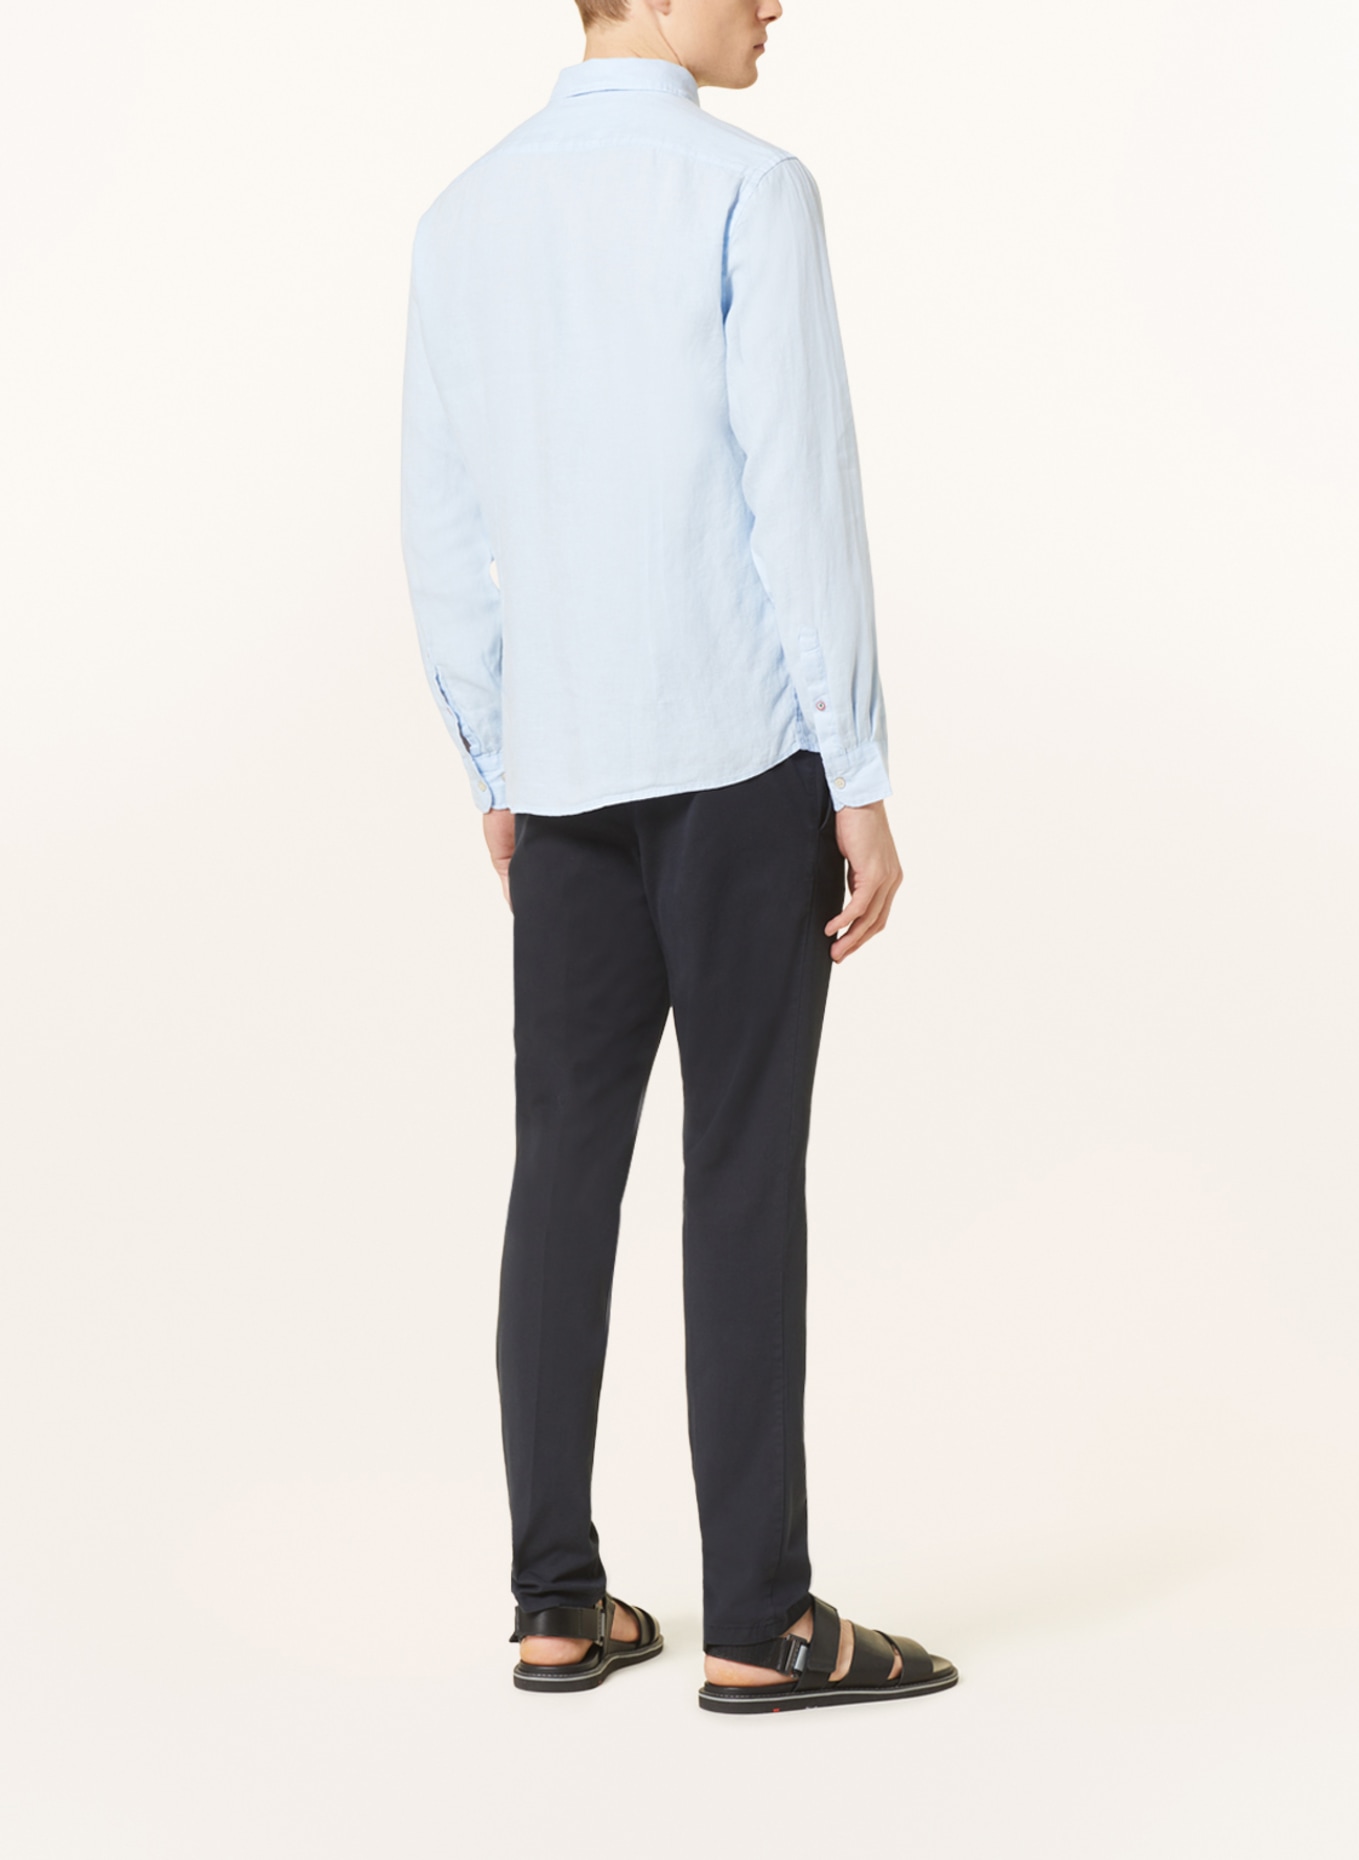 CINQUE Linen shirt CISTEVE slim Fit, Color: LIGHT BLUE (Image 3)